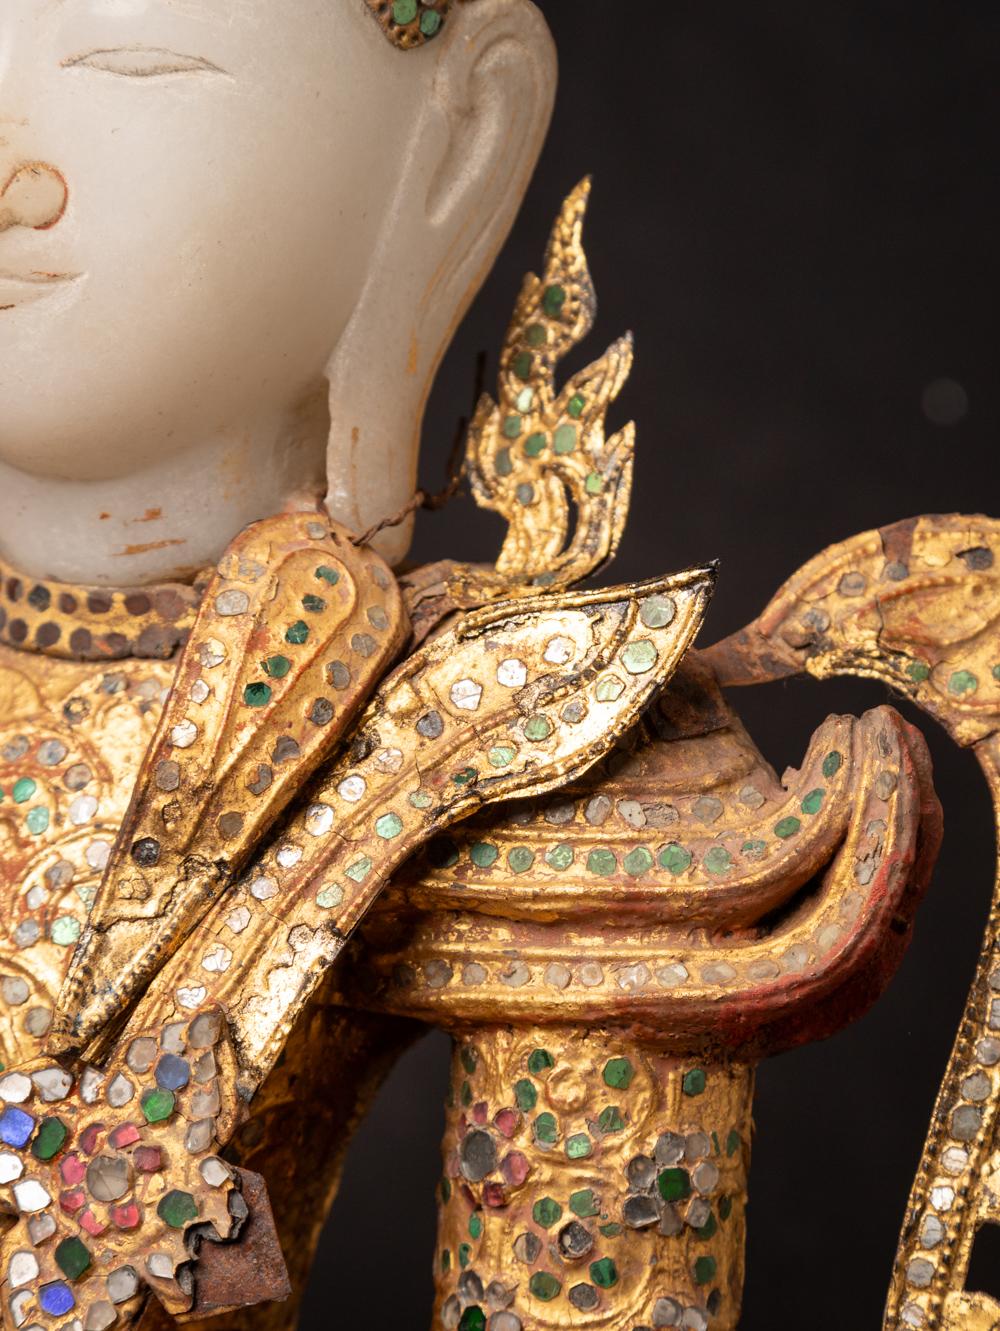 Cette statue antique de Bouddha couronné de Birmanie est une œuvre d'art et de spiritualité remarquable. Il est fabriqué en bois et mesure 42 cm de haut, pour une largeur de 43 cm et une profondeur de 22 cm.

La statue est représentée dans le mudra